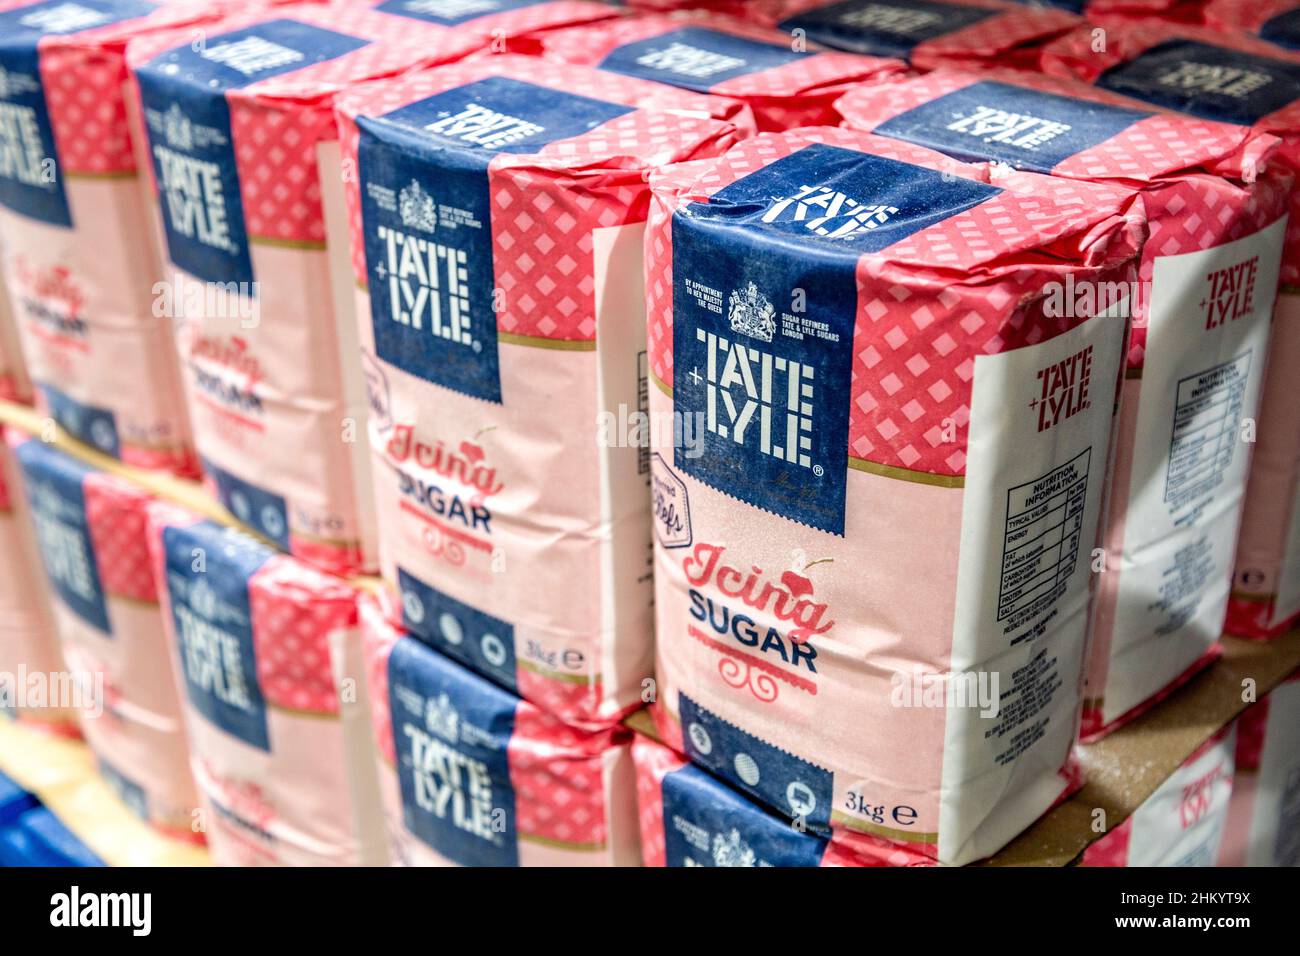 Päckchen Tate & Lyle Icing Sugar in einem Supermarkt Stockfoto